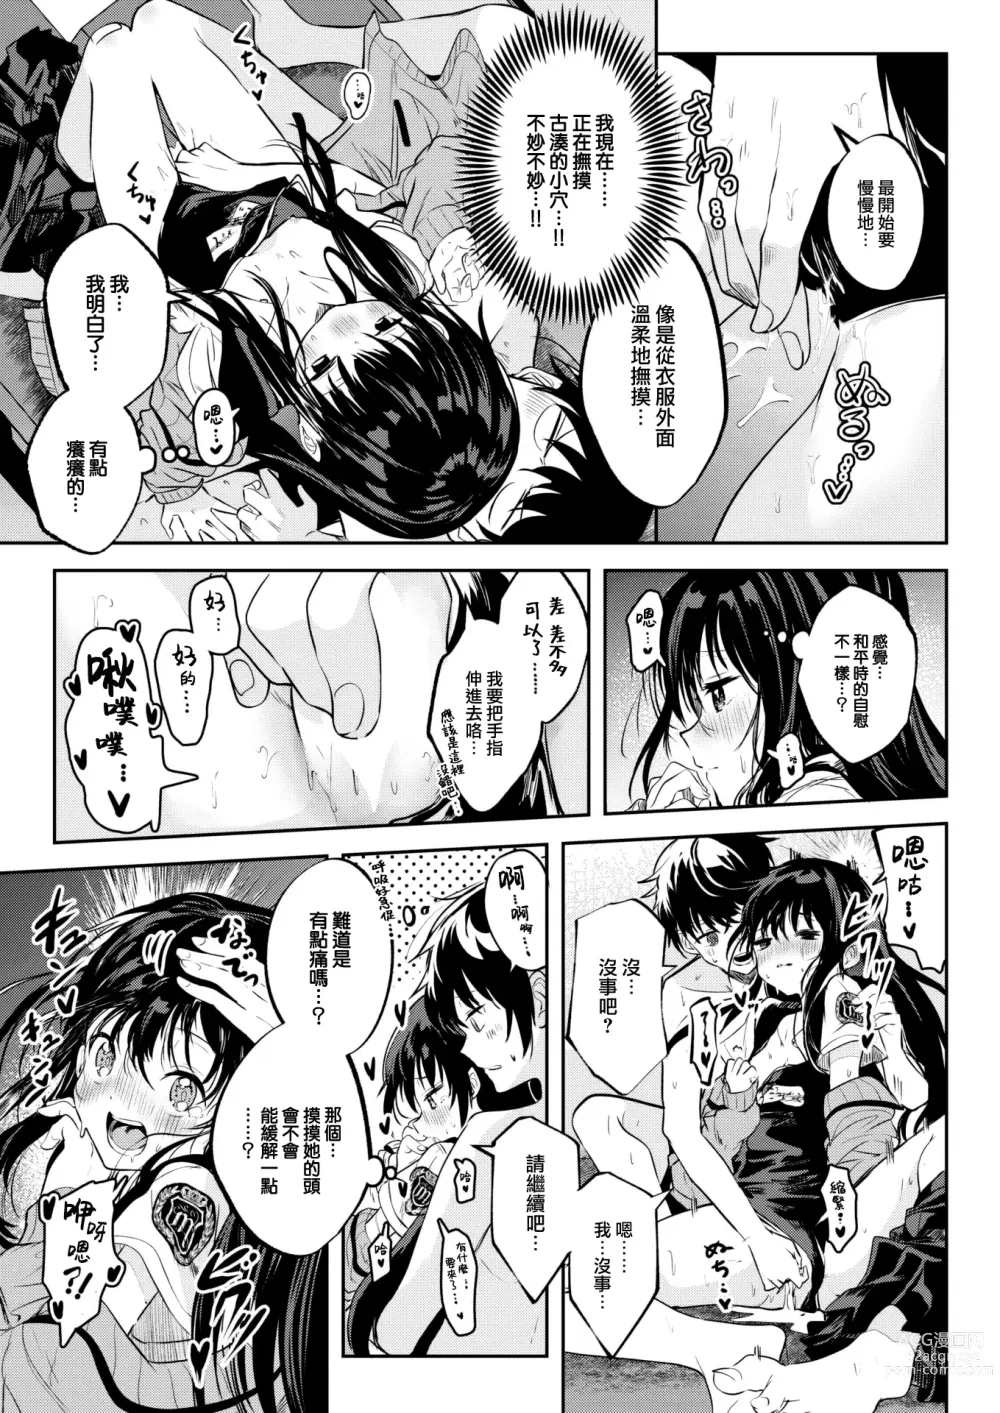 Page 16 of manga Otome no Binetsu wa Younetsu Shigoku.